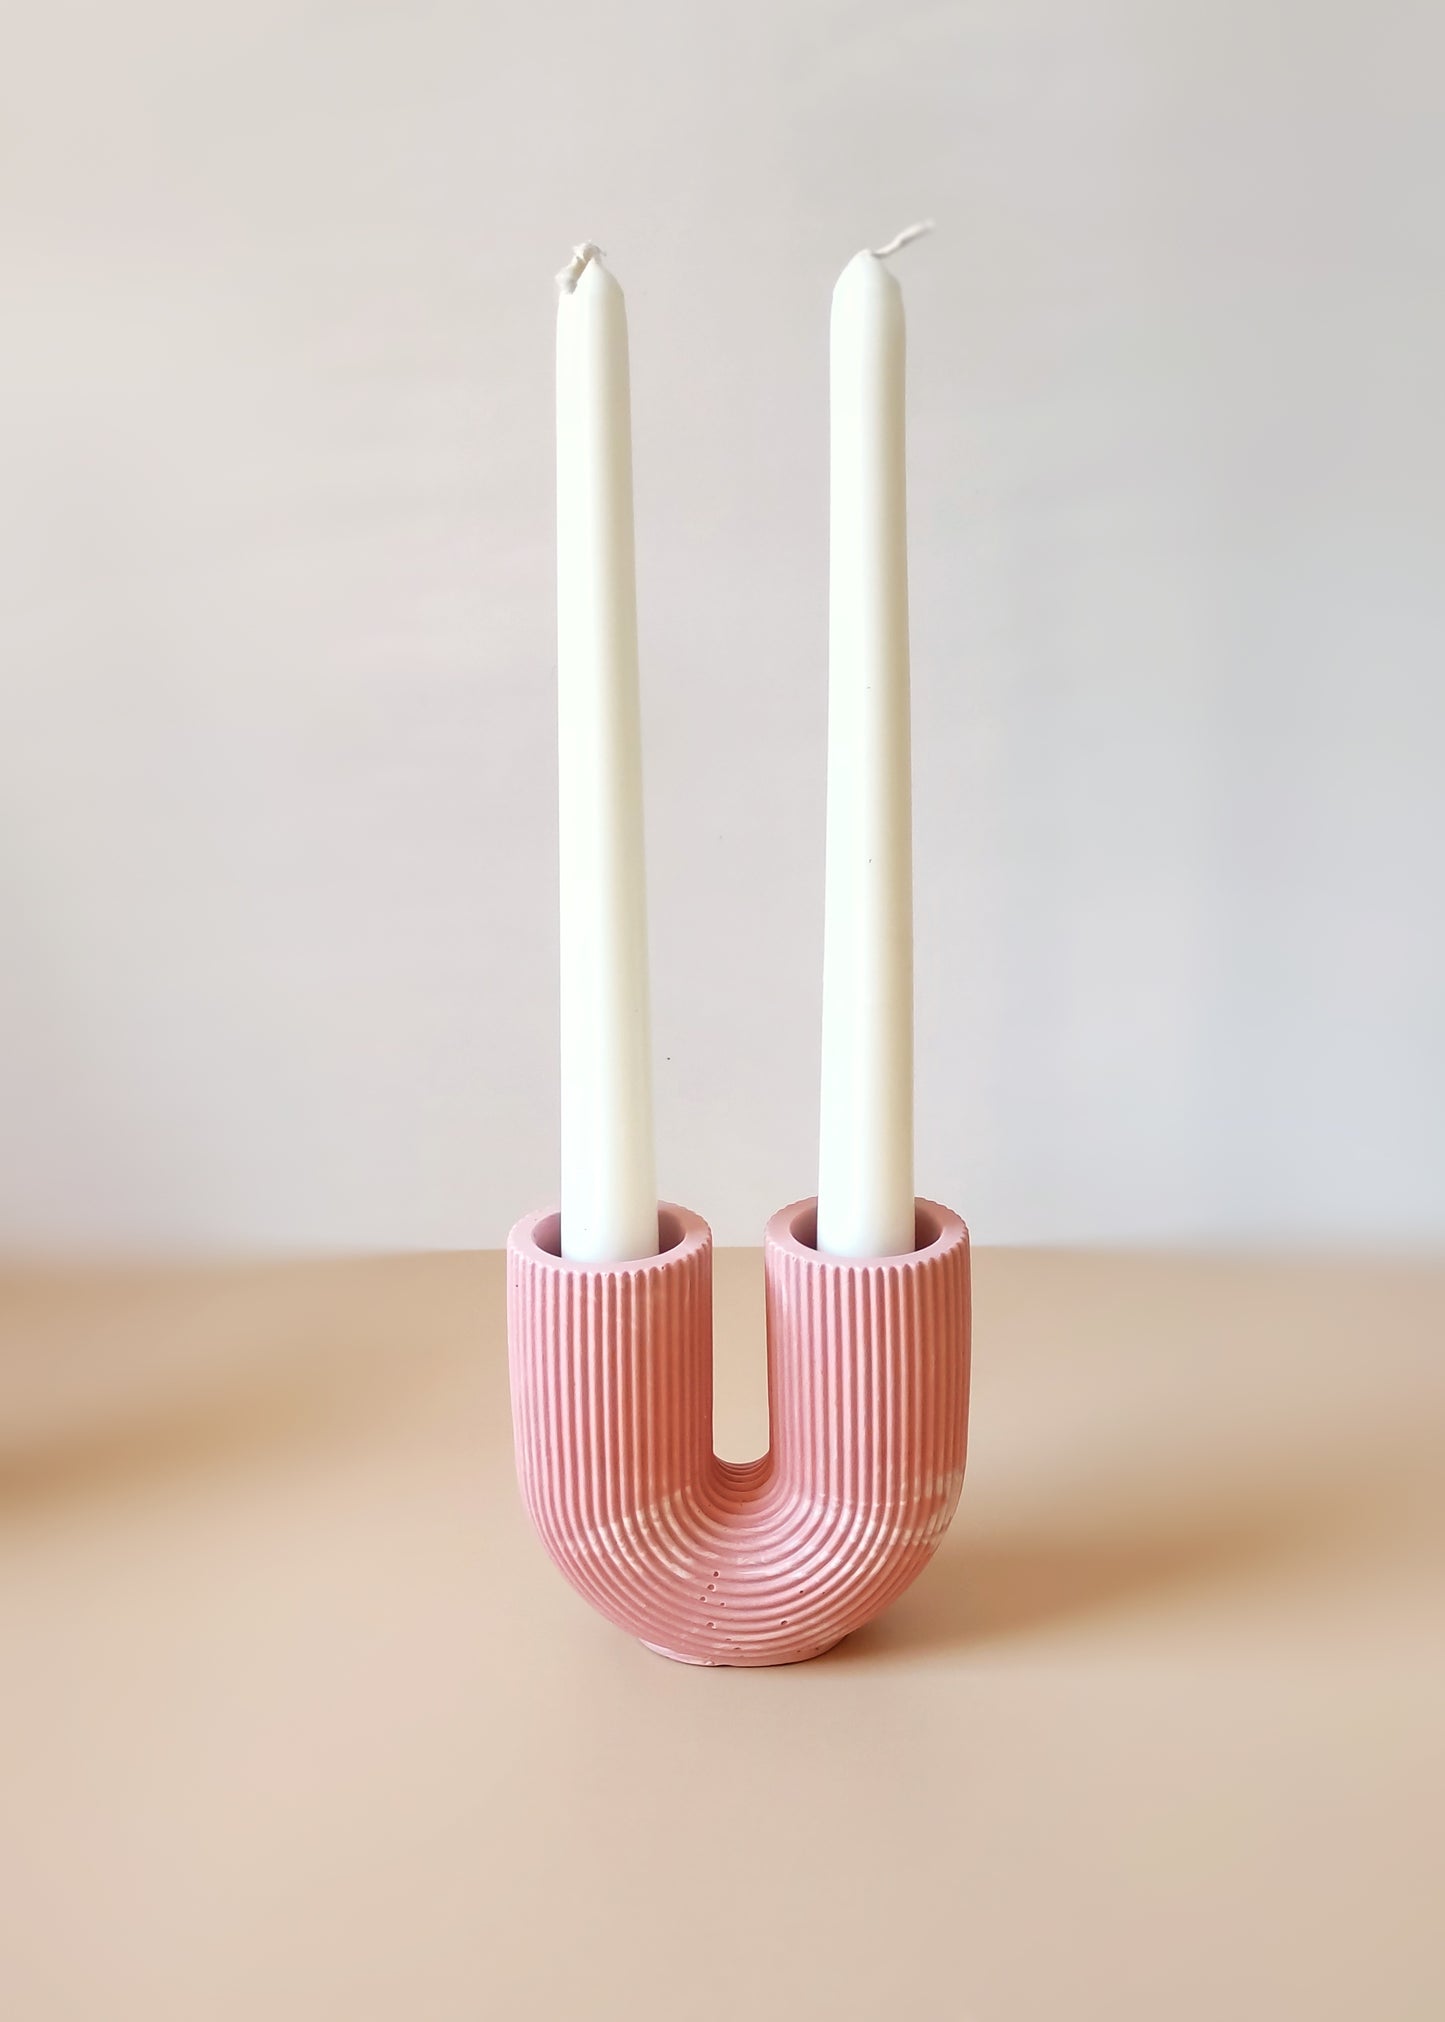 Candlestick Holder, U-Shaped Nordic Style